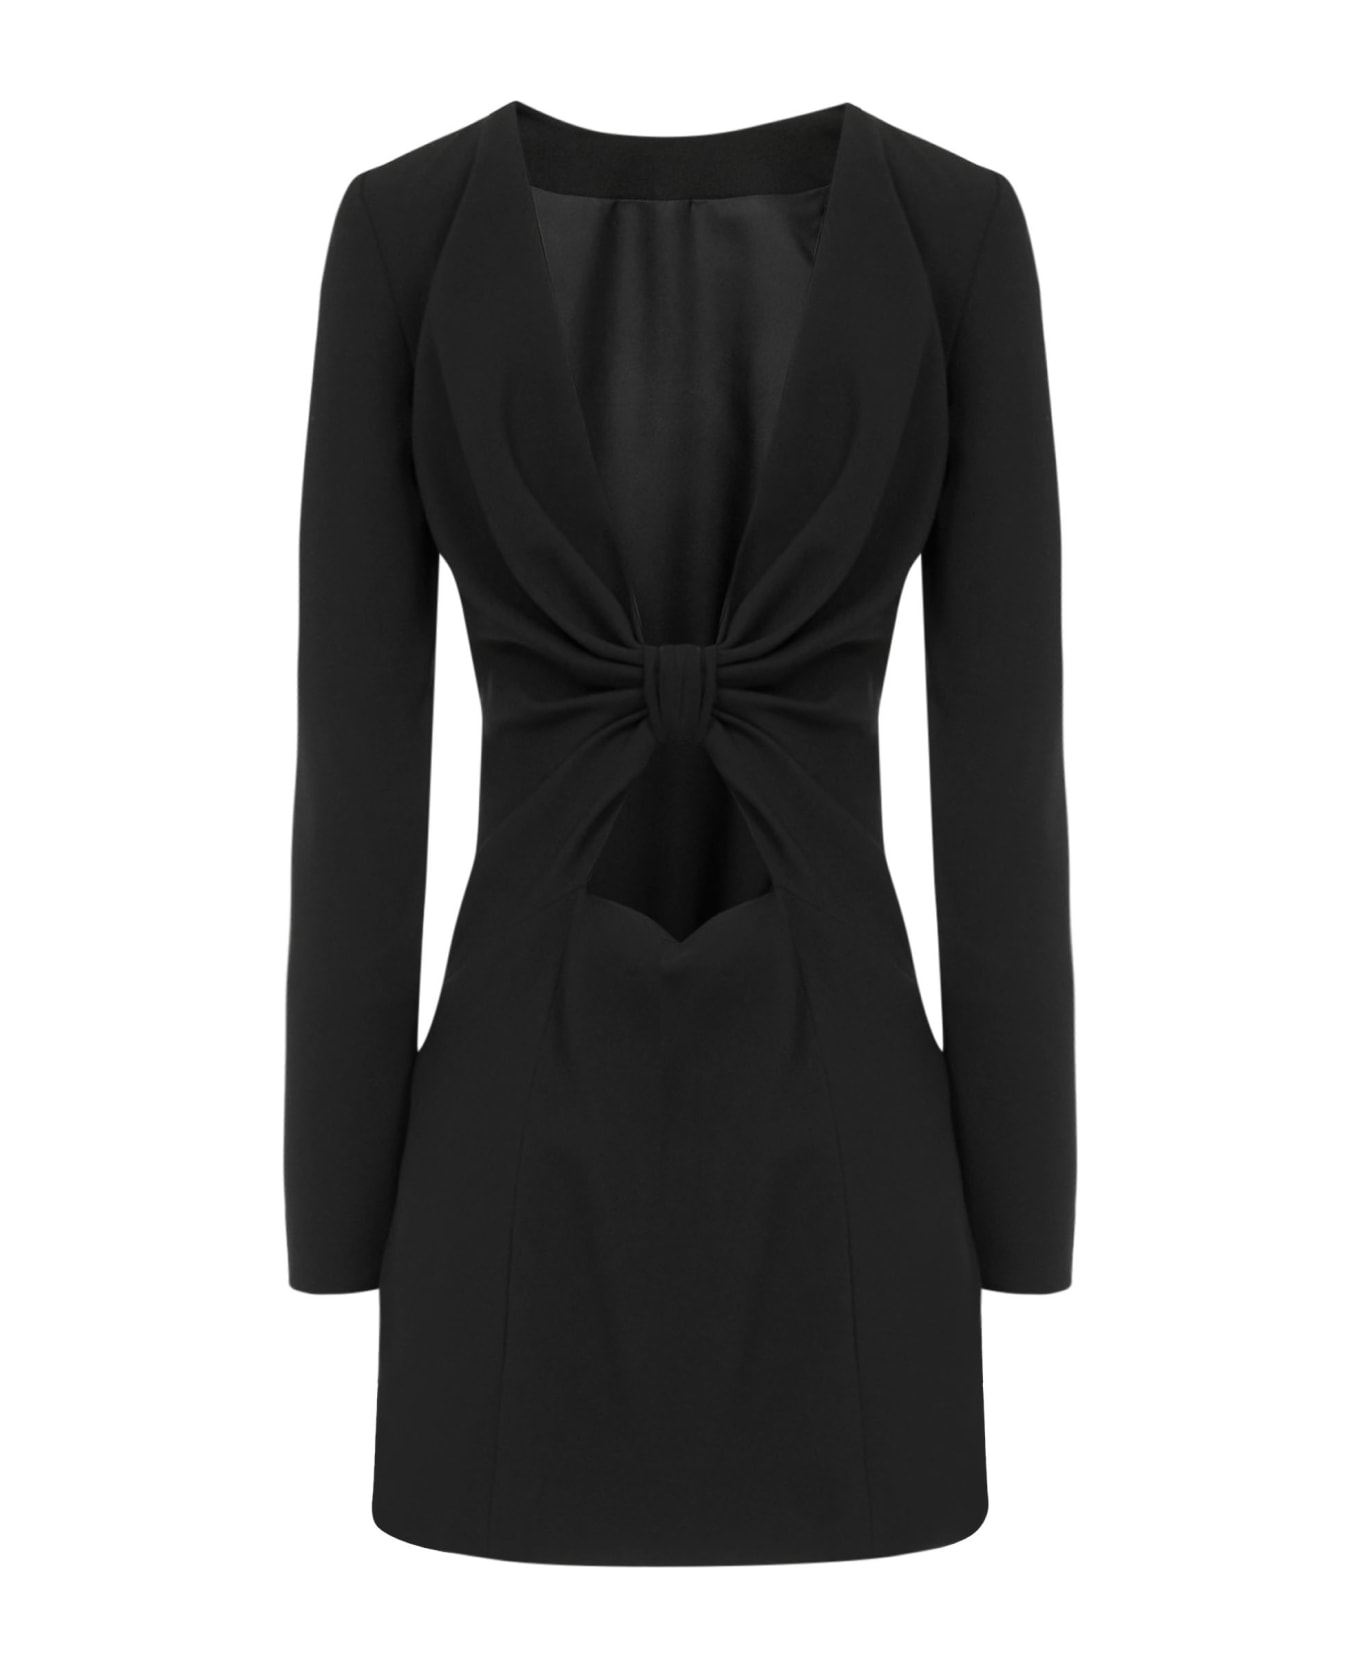 Saint Laurent Dress - Black